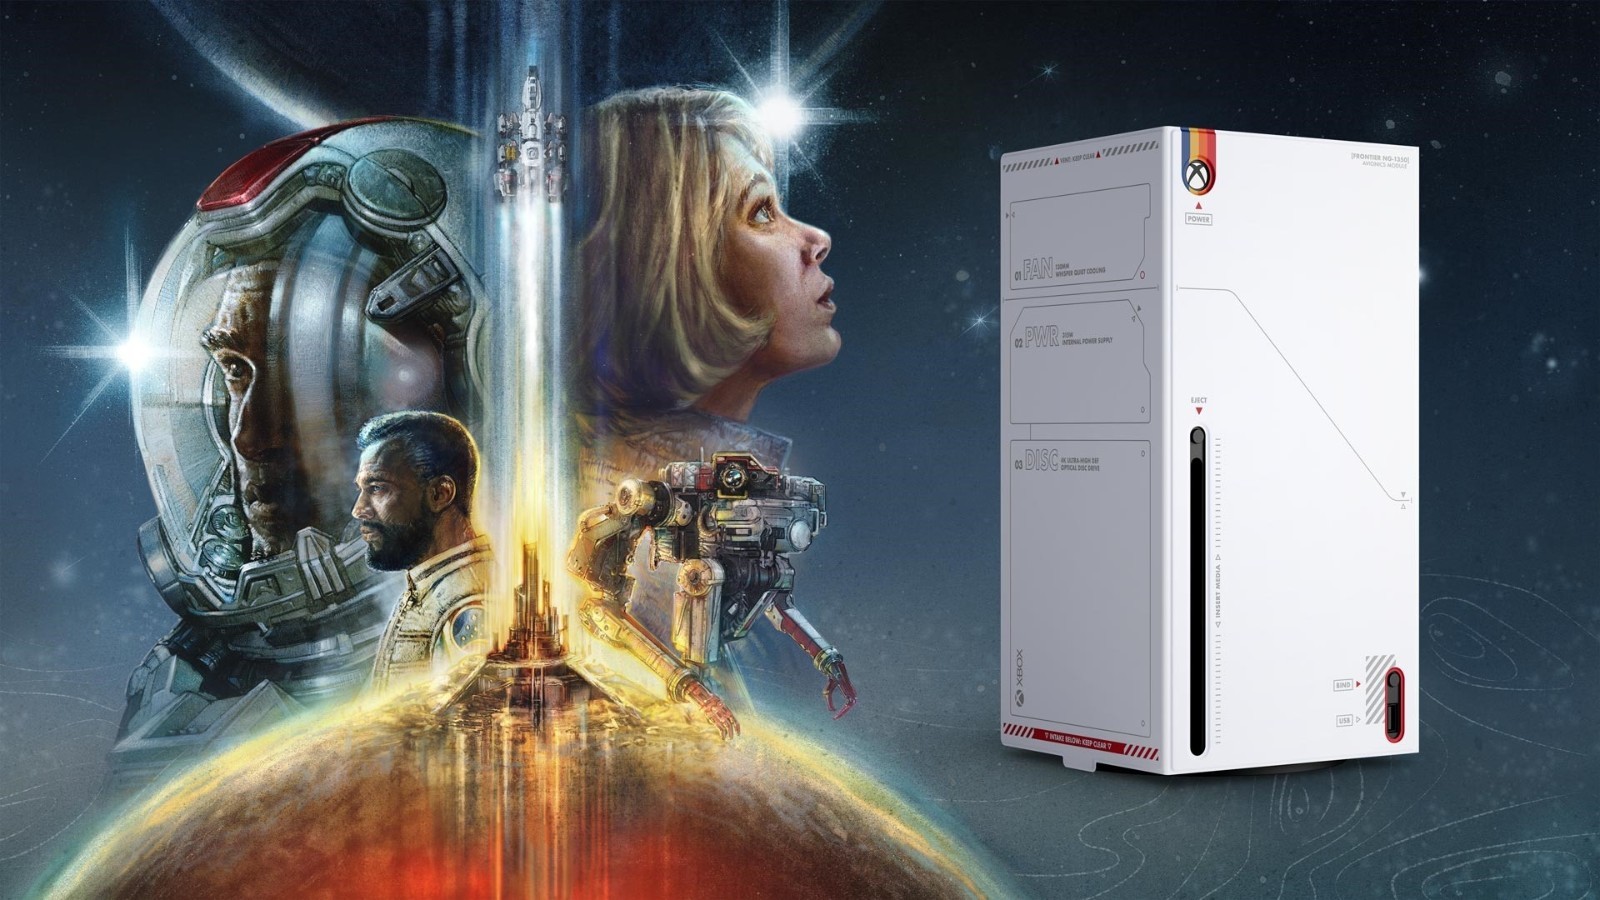 【主機遊戲】微軟推出《星空》定製版XSX主機外殼 售價49.99美元-第1張